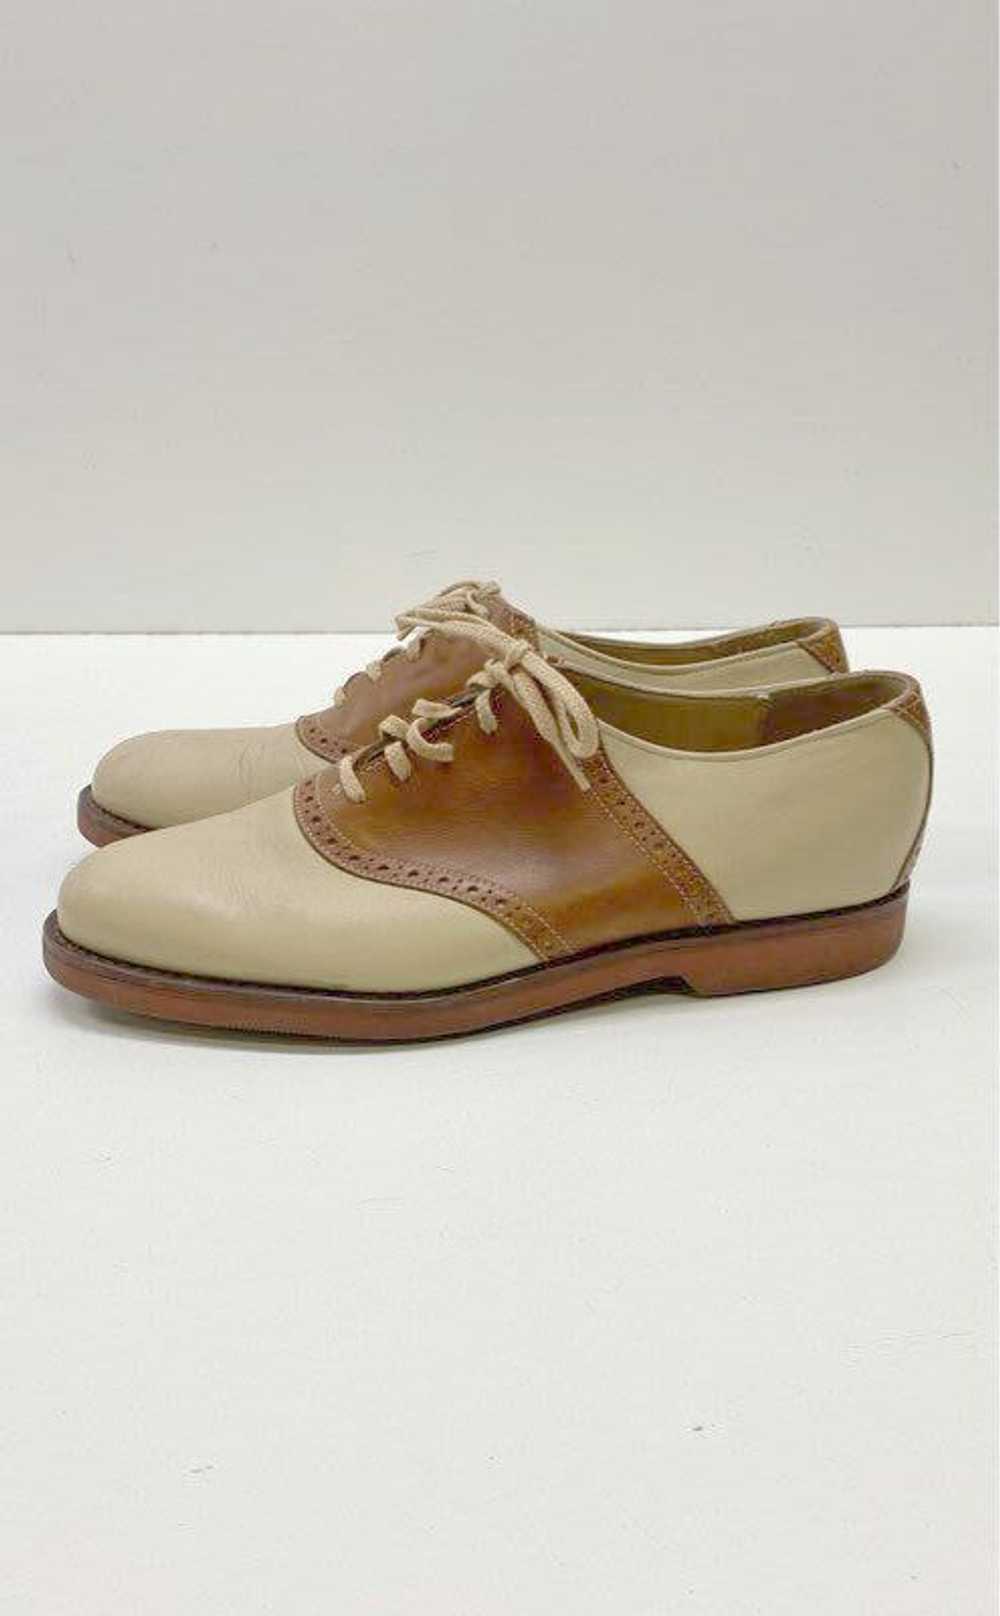 Cole Haan Men's Brown/Tan Saddle Shoes Sz. 8.5 - image 2